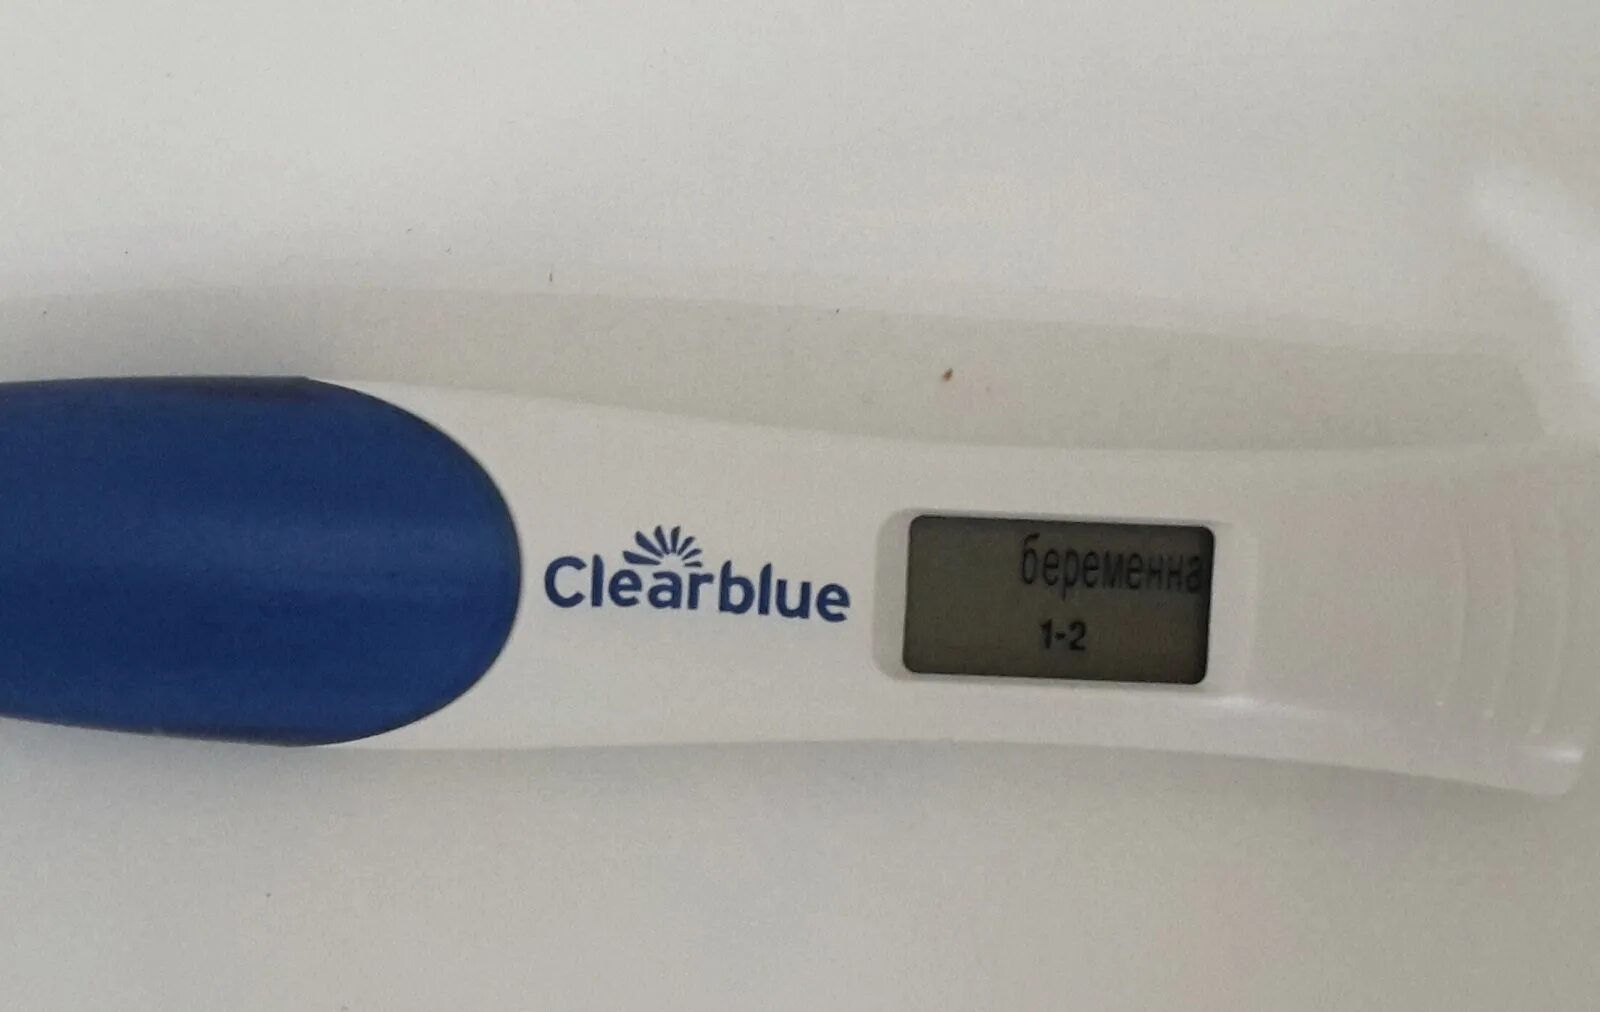 1 Цифровой тест на беременность. Электронный тест на беременность 1-2 недели беременности. Электронный тест на беременность 1 неделя беременности. Clearblue 1-2 недели. Цифровой электронный тест